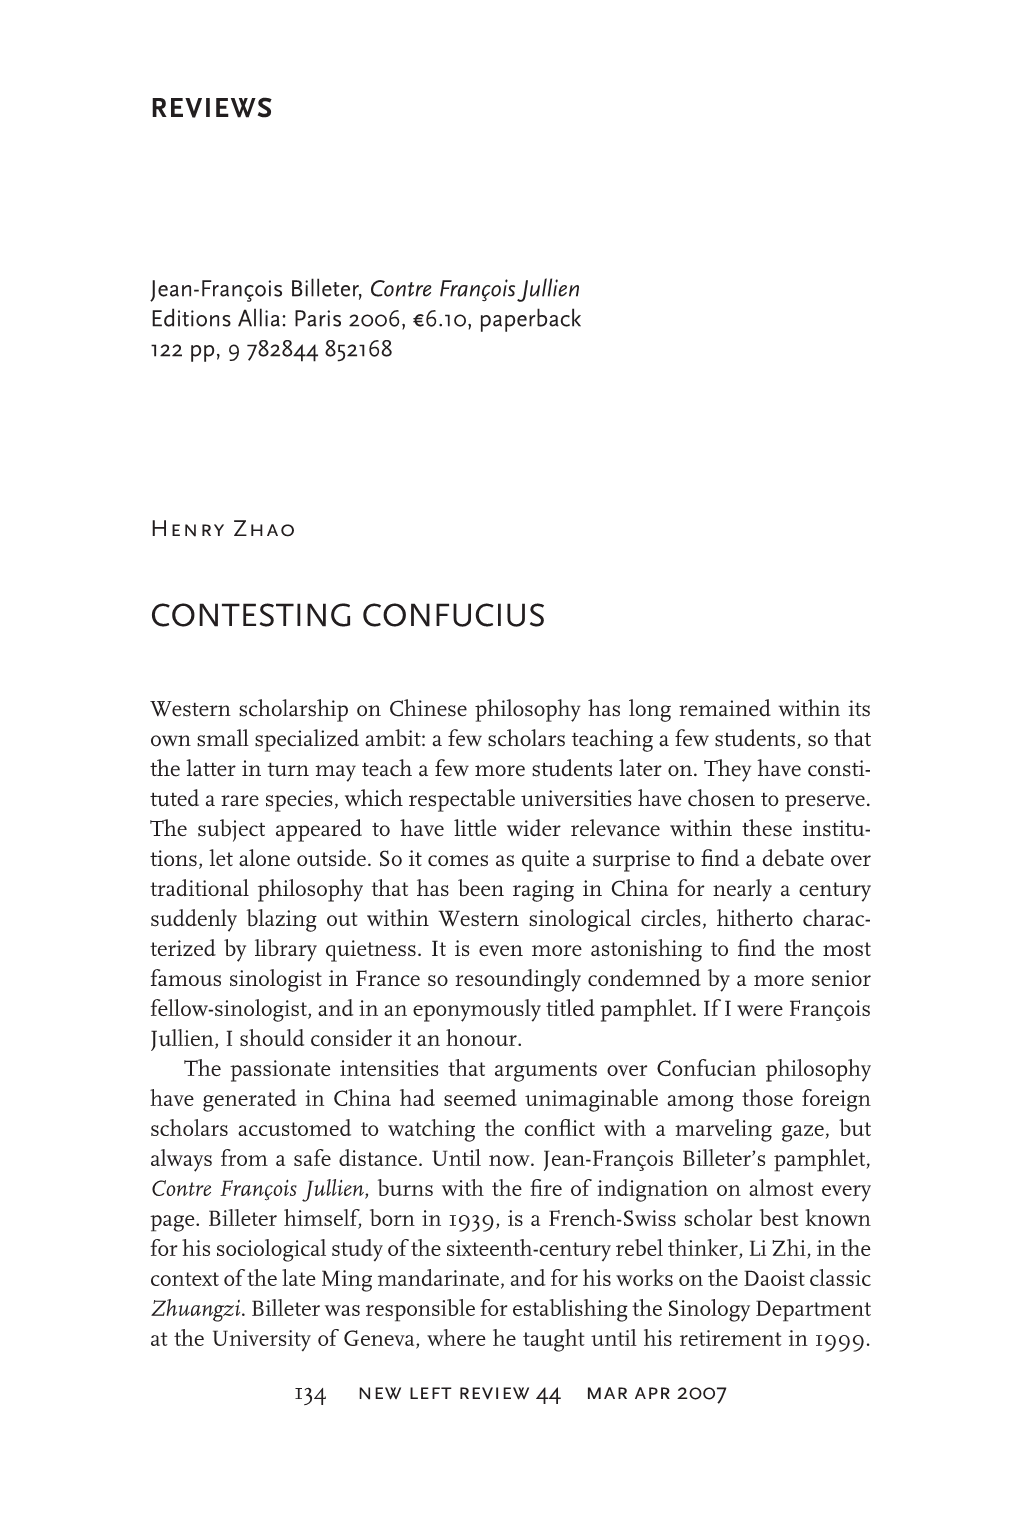 Contesting Confucius